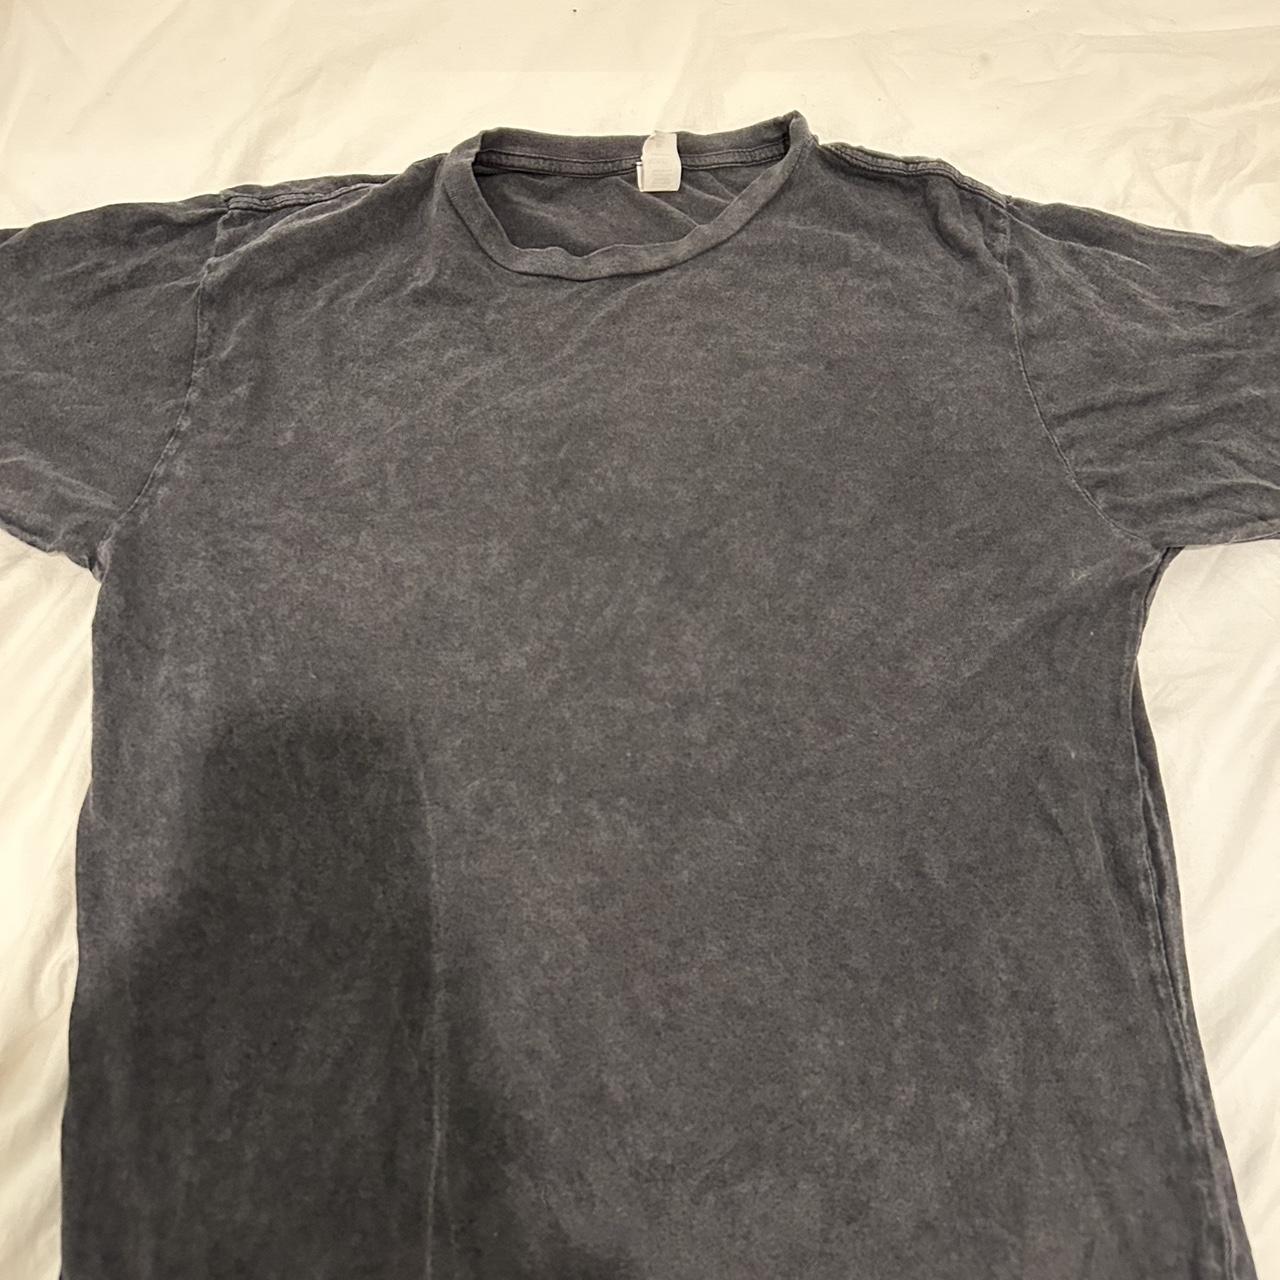 Men’s oversized grey vintage wash shirt - Depop